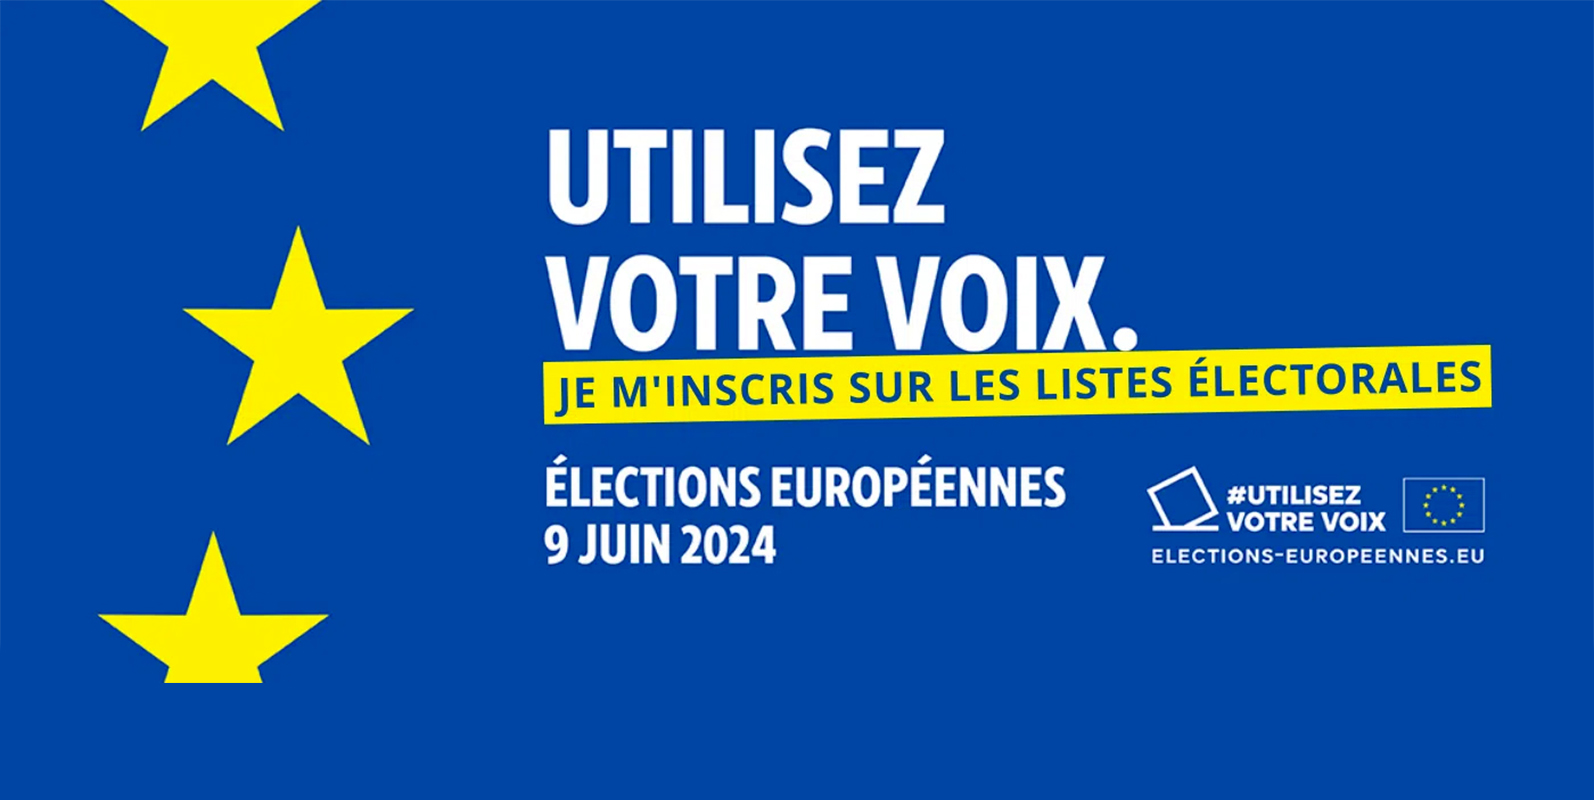 inscriptions possibles pour les élections européennes jusqu'au 03 mai 2024